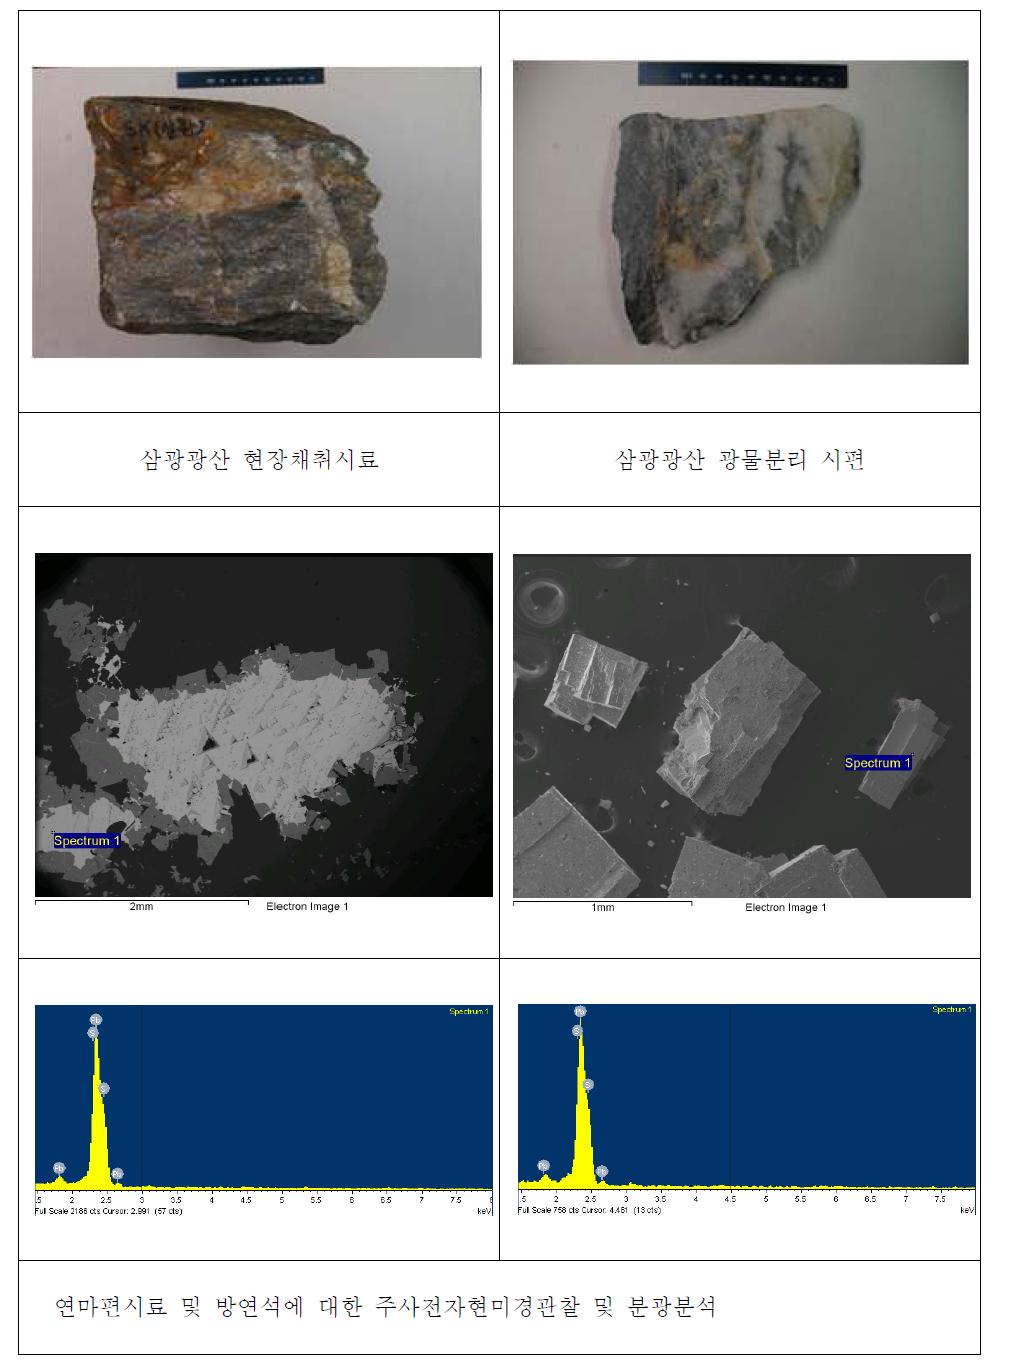 삼광광산 연마편시료 및 방연석시료의 주사전자현미경관찰 및 분광분석